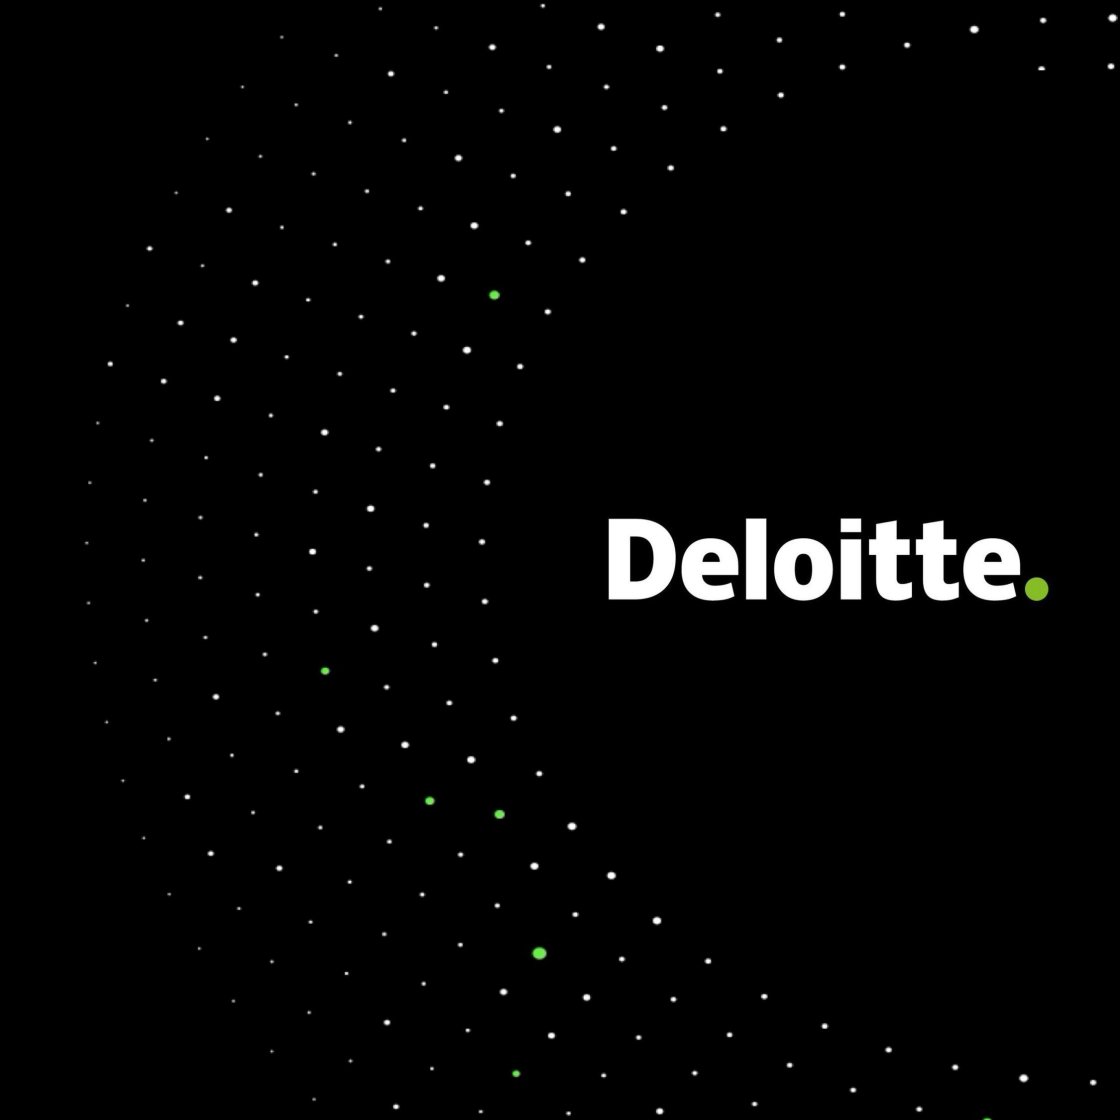 Deloitte - Meta